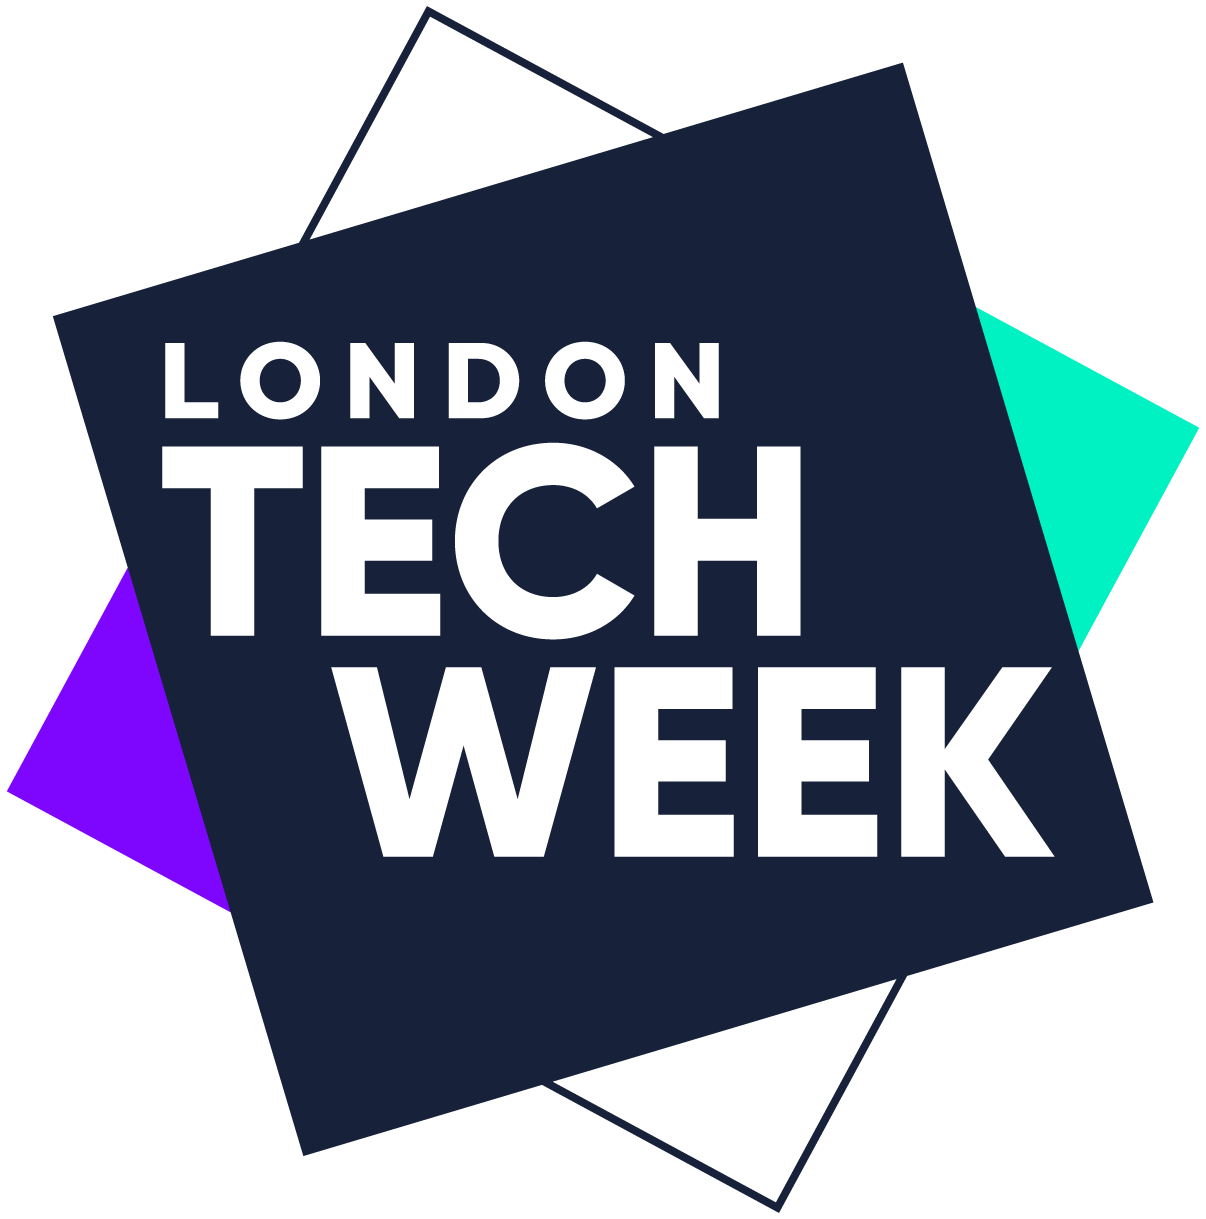 Channel Partners Europe is part of London Tech Week 2022